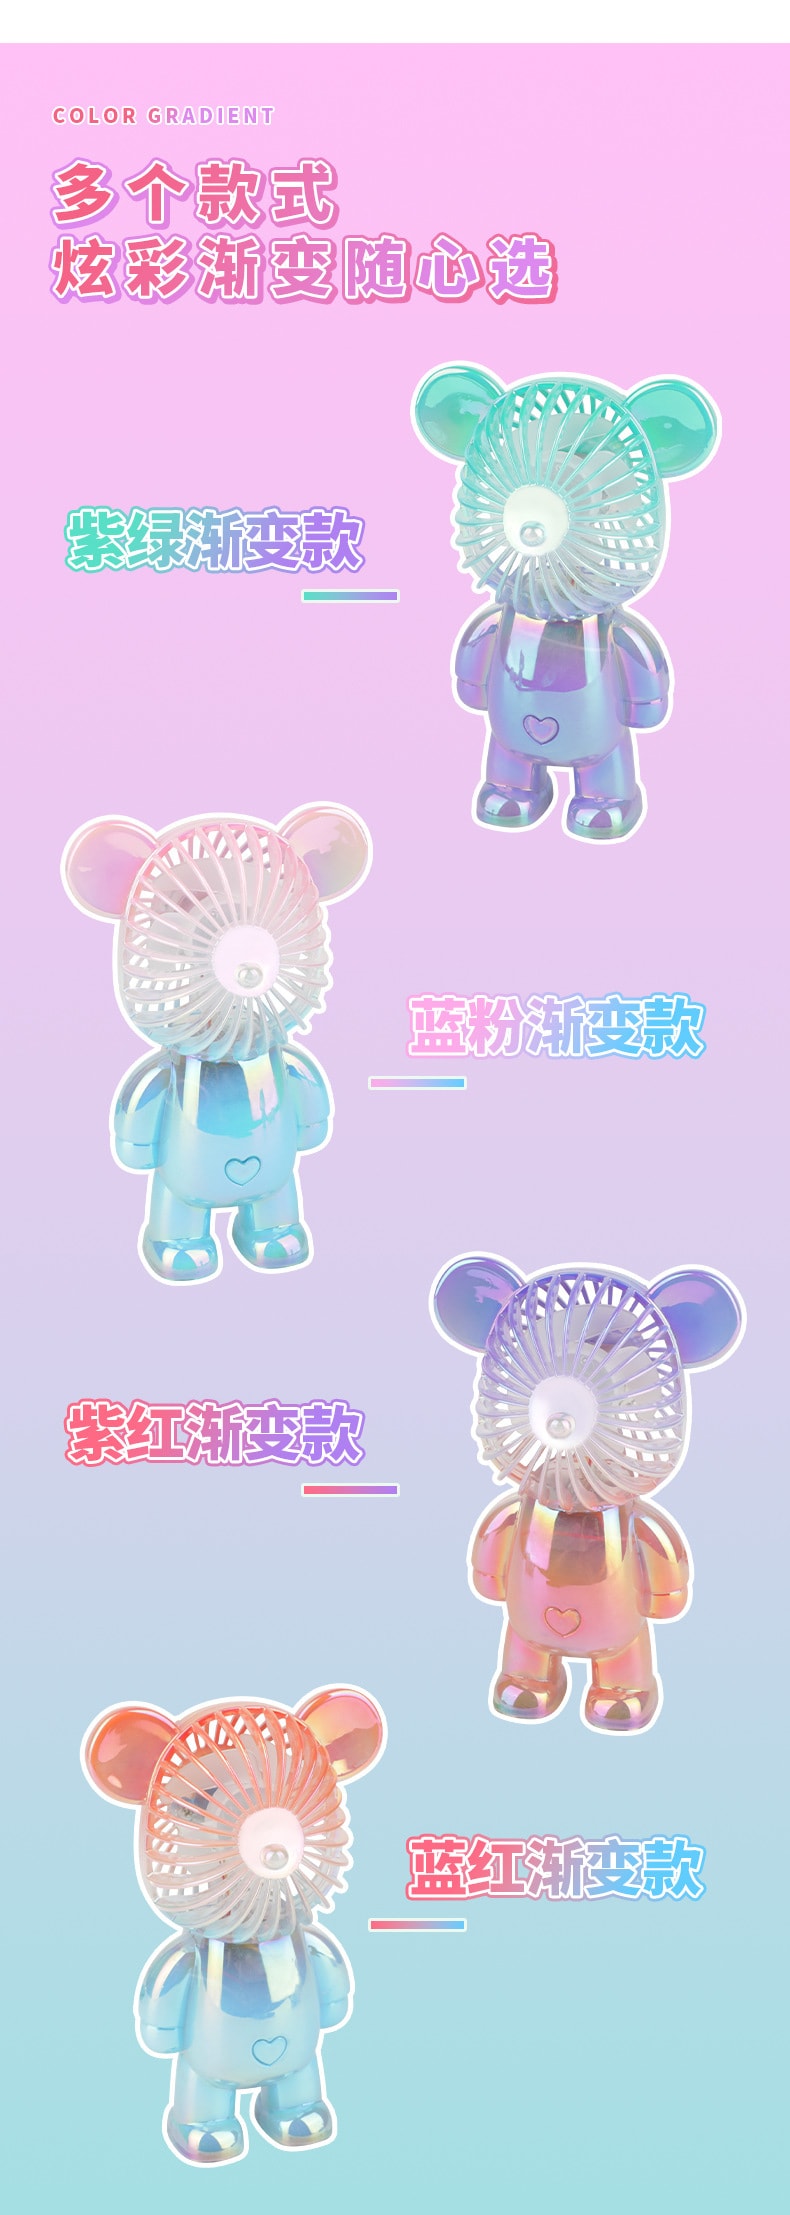 【樂尚星】漸變果凍熊炫彩風扇 桌面小型風扇 (USB充電)